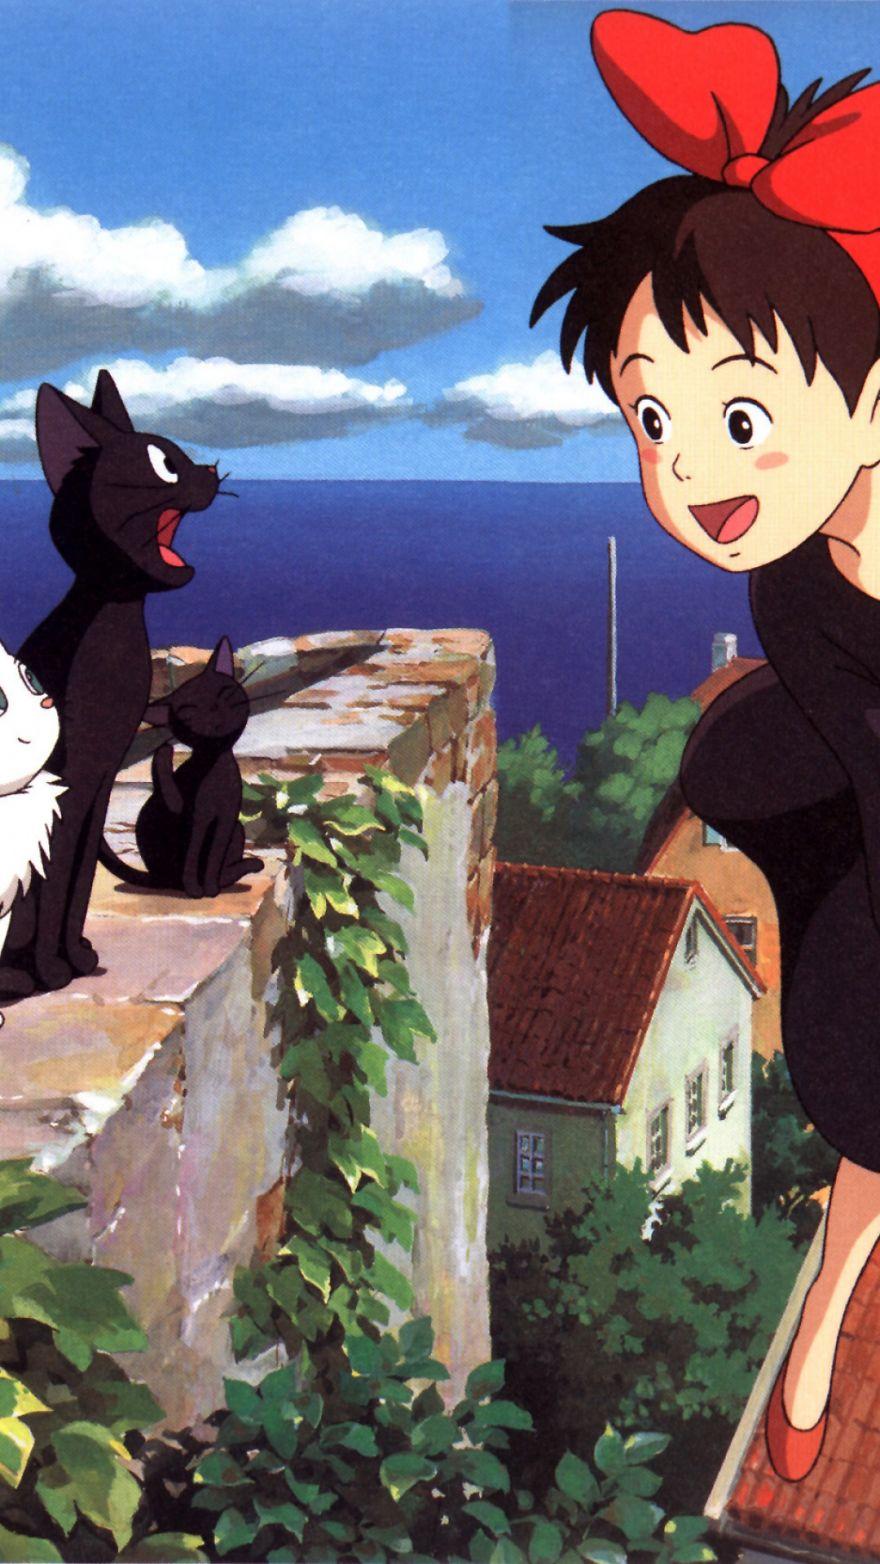 Chú mèo Jiji và cô phù thủy nhỏ (Nguồn: Internet)